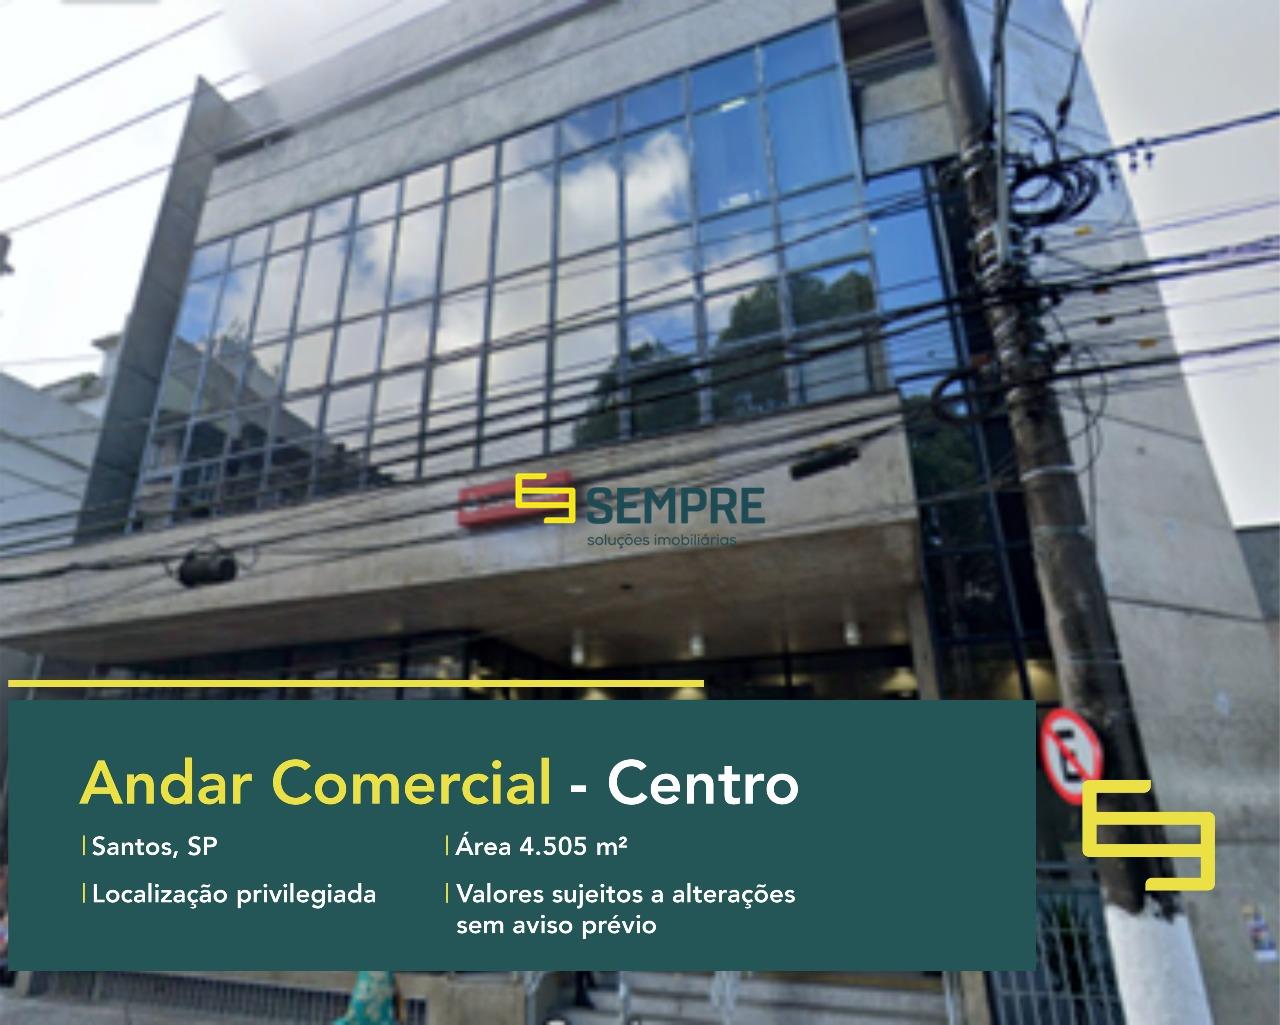 Laje corporativa no Centro de Santos para locação - São Paulo, excelente localização. O estabelecimento comercial conta com área de 4.505 m².